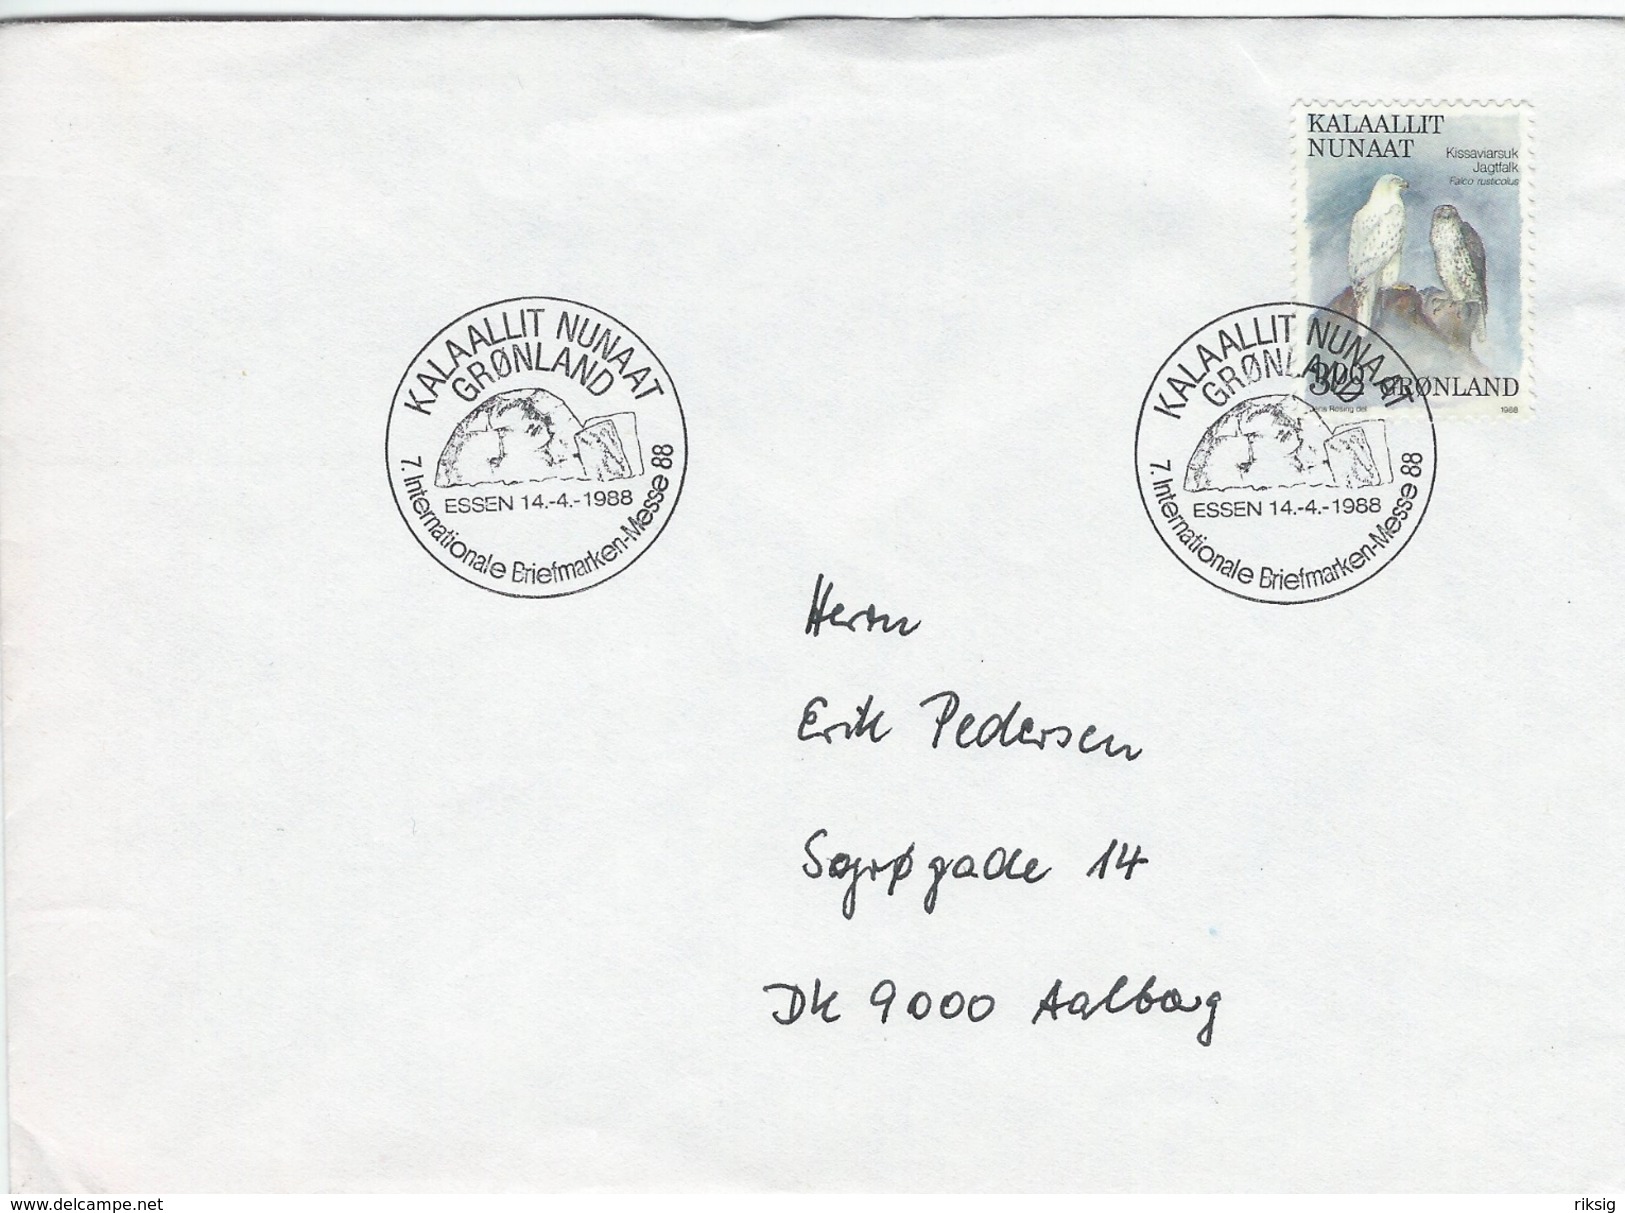 Greenland Postmark  7. Internationale Briefmarken Messe 88.  Essen 14.-4.- 1988.  H-1080 - Postmarks